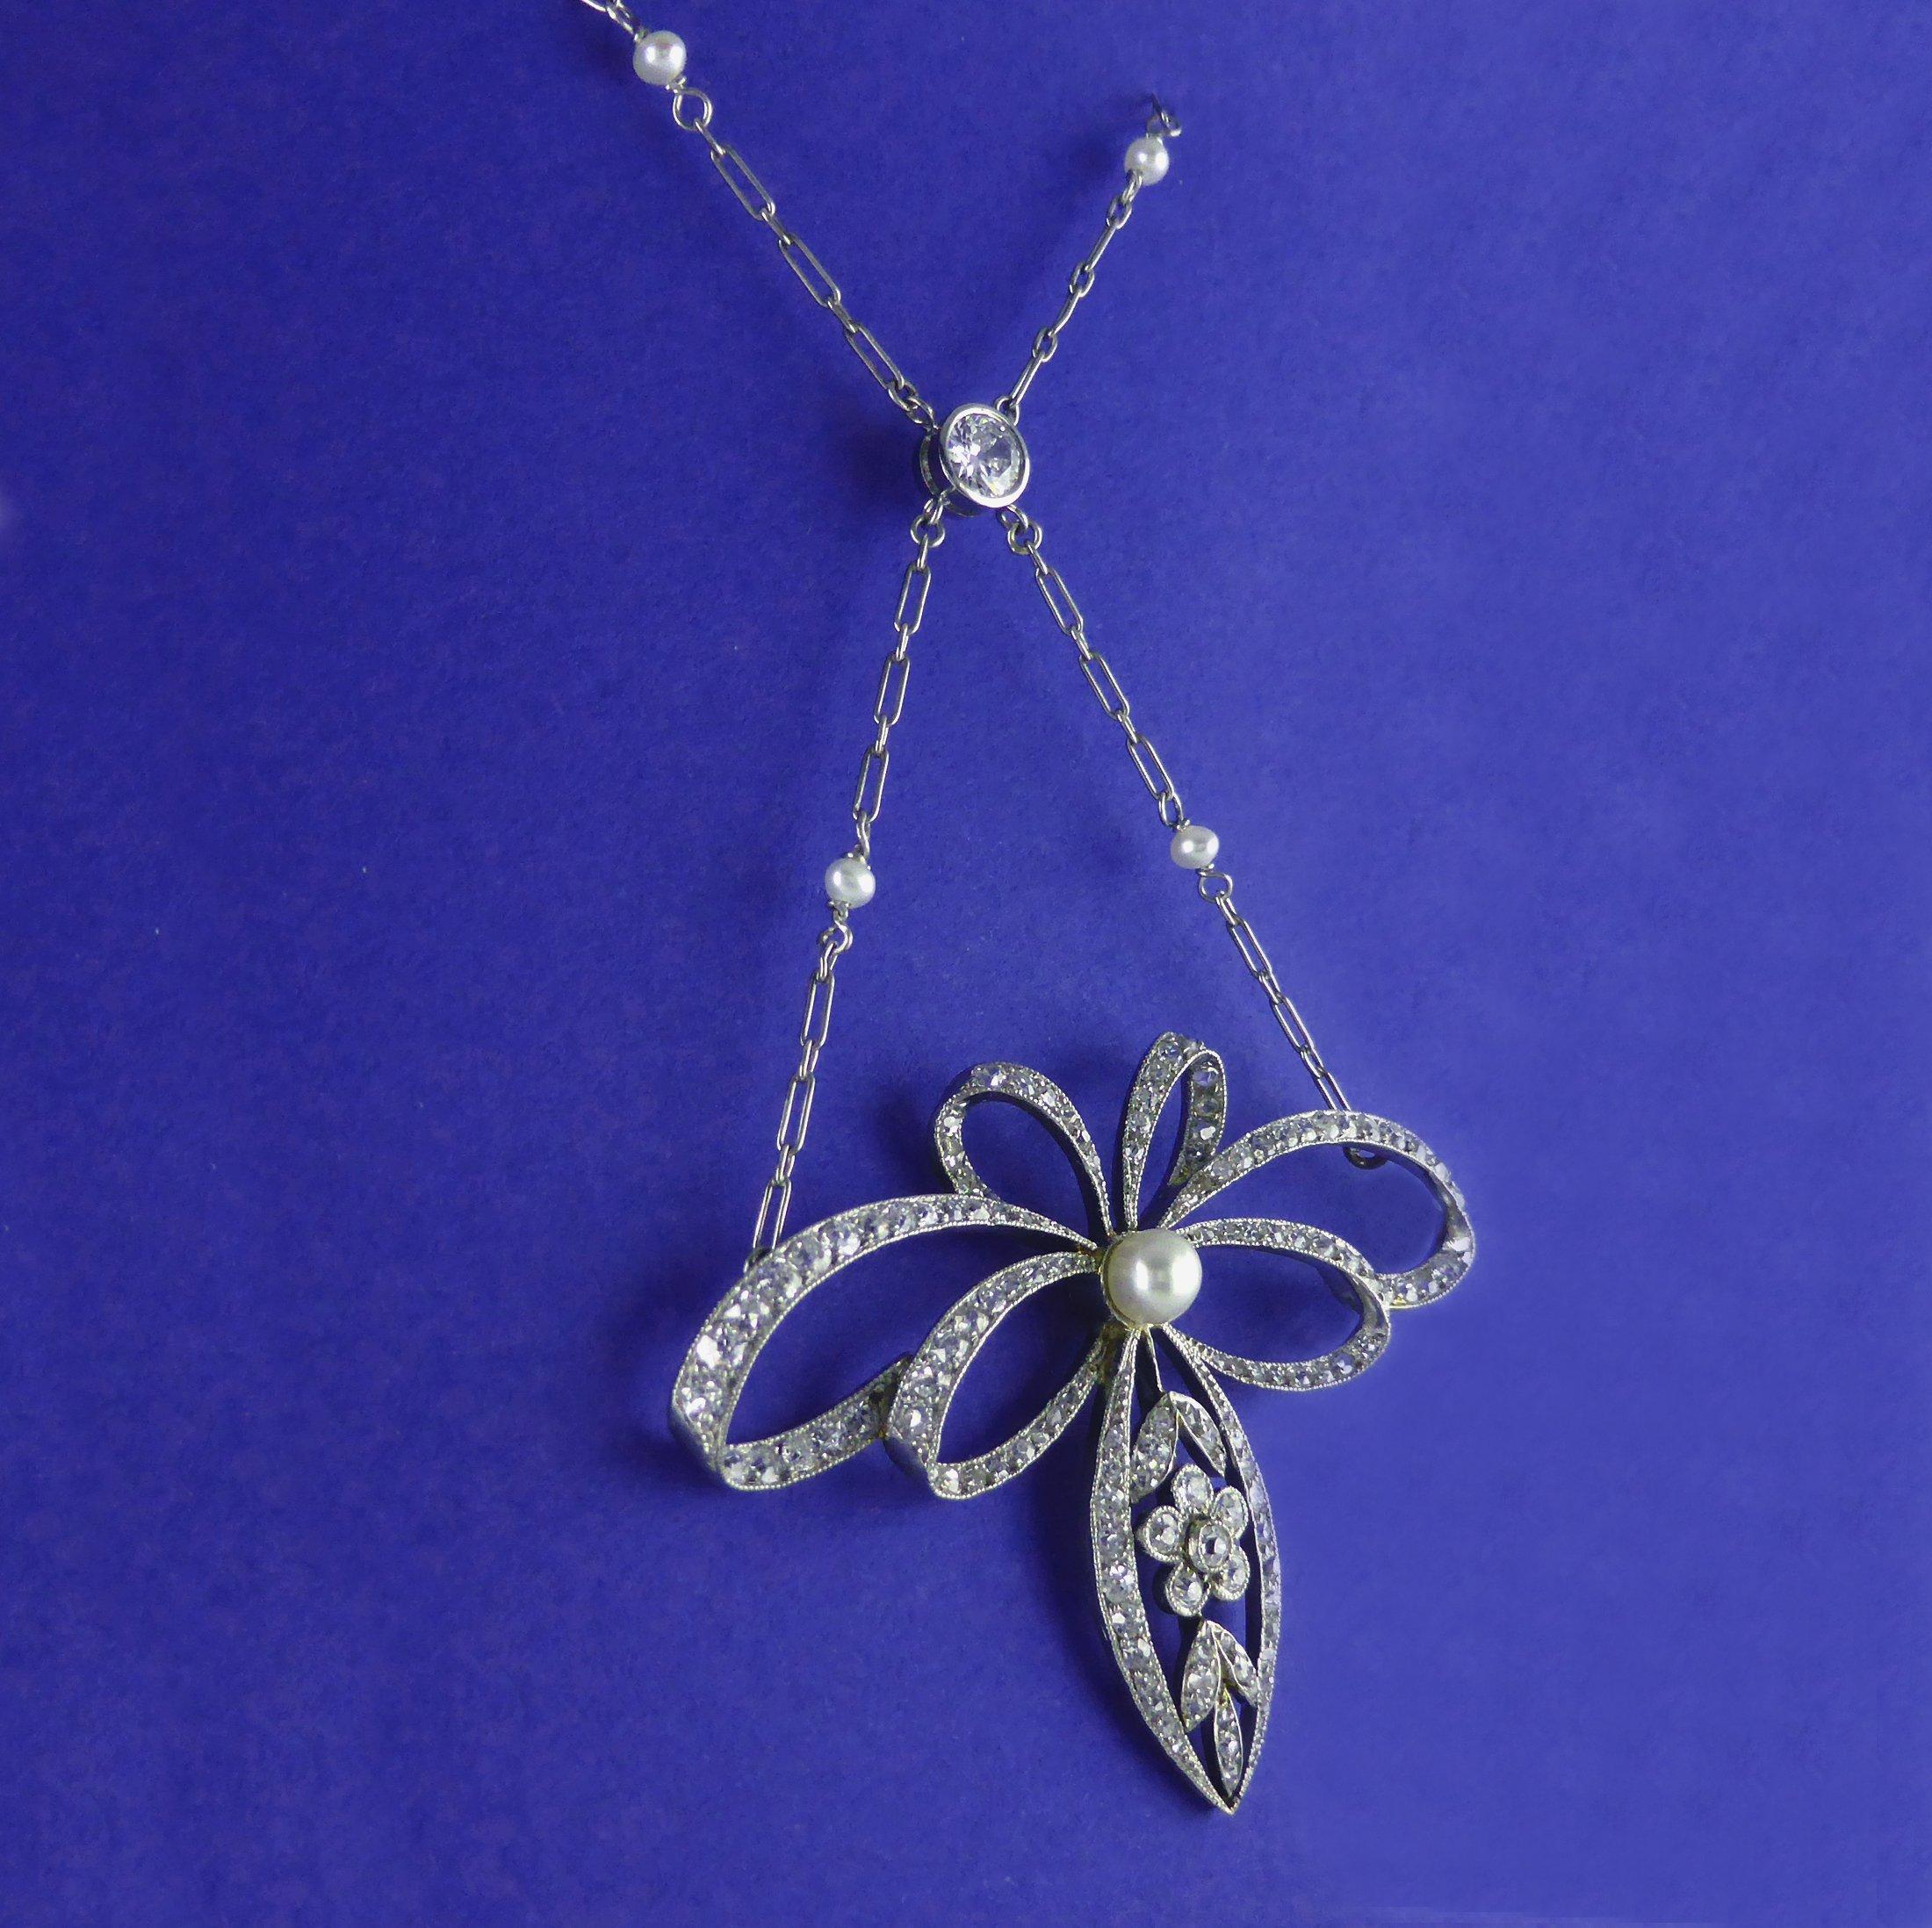 belle-Epoque-Halskette aus 18 Karat und Platin, mit Perlen und Diamanten besetzt, um 1910
Ein schönes Beispiel für ein Collier aus der Belle Epoque. Die Rückseite ist aus 18 Karat Gelbgold, die Vorderseite aus Platin, besetzt mit Diamanten und einer